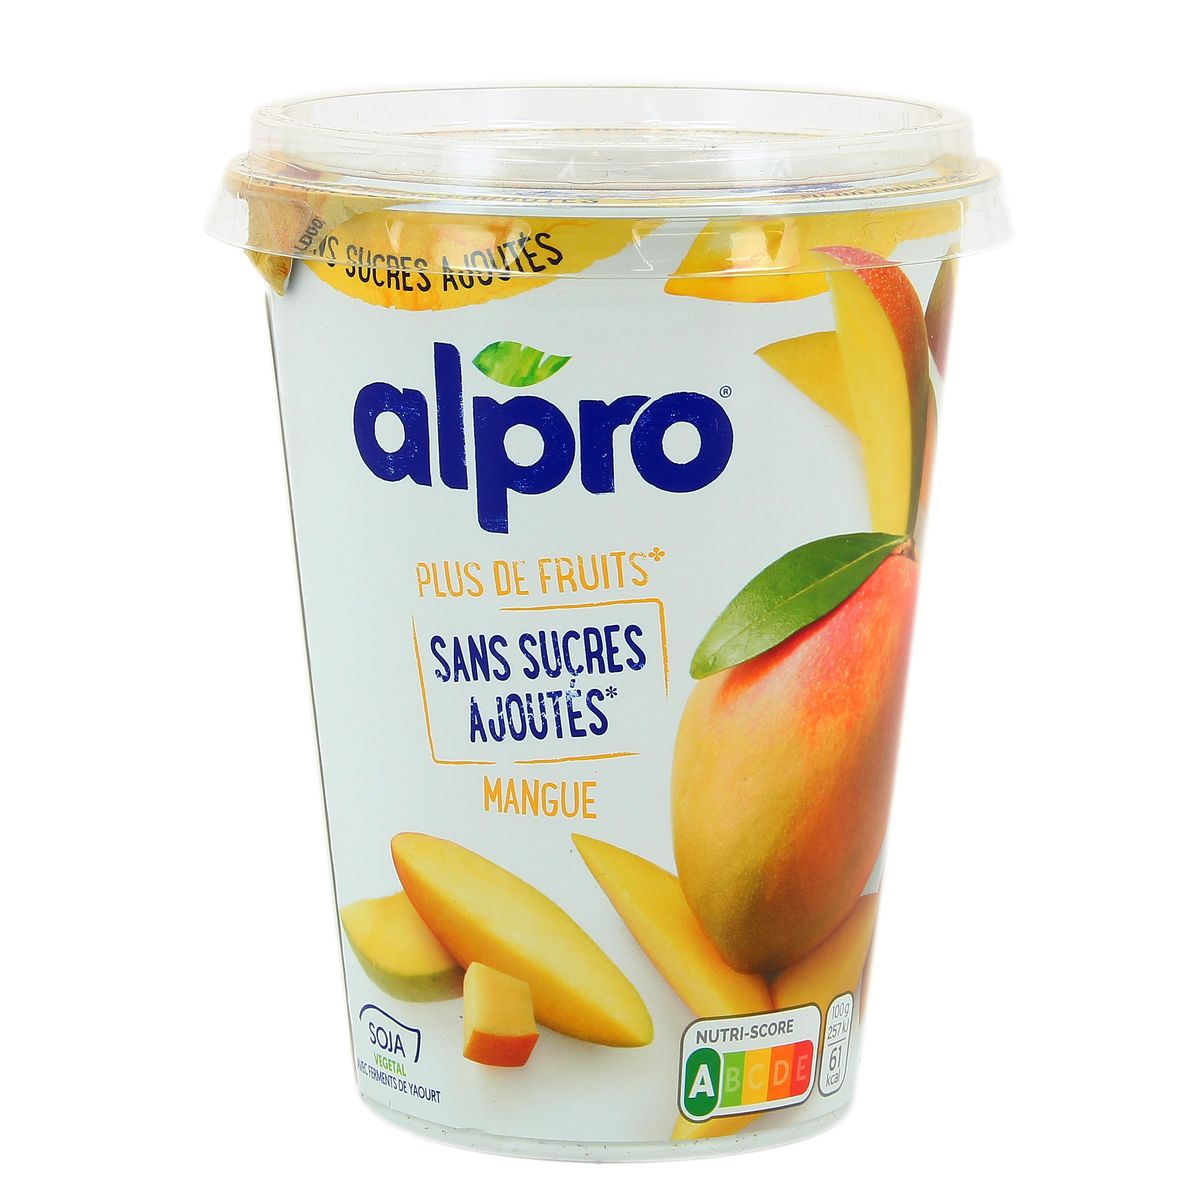 Alpro Protéiné Alternative Végétale au Yaourt à la mangue et à la banana​